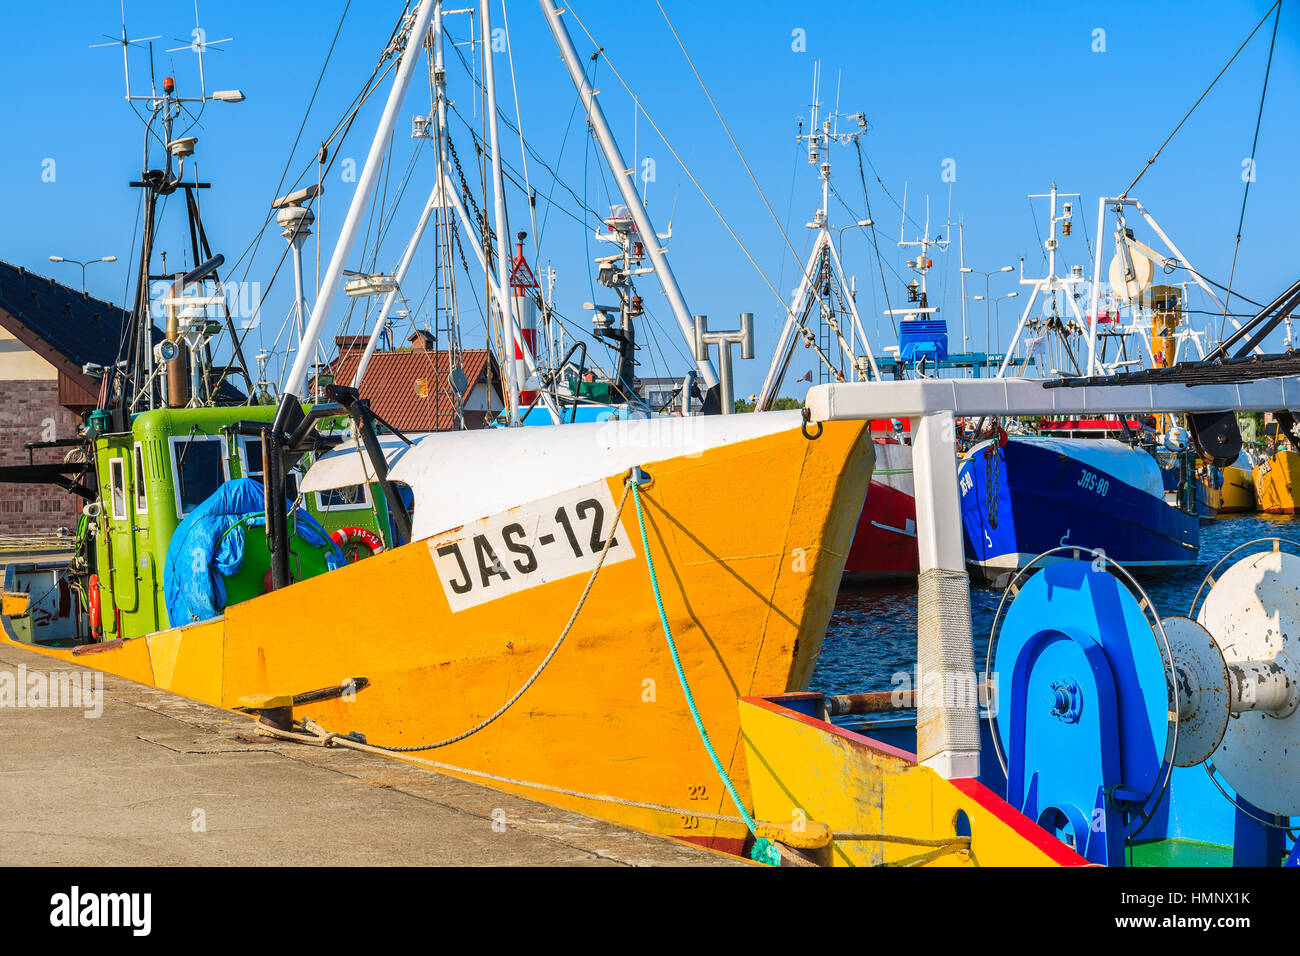 Porta JASTARNIA, Polonia - giu 21, 2016: tradizionali barche da pesca di ancoraggio nel porto Jastarnia su soleggiate giornate estive, penisola di Hel, Mar Baltico, Polonia Foto Stock